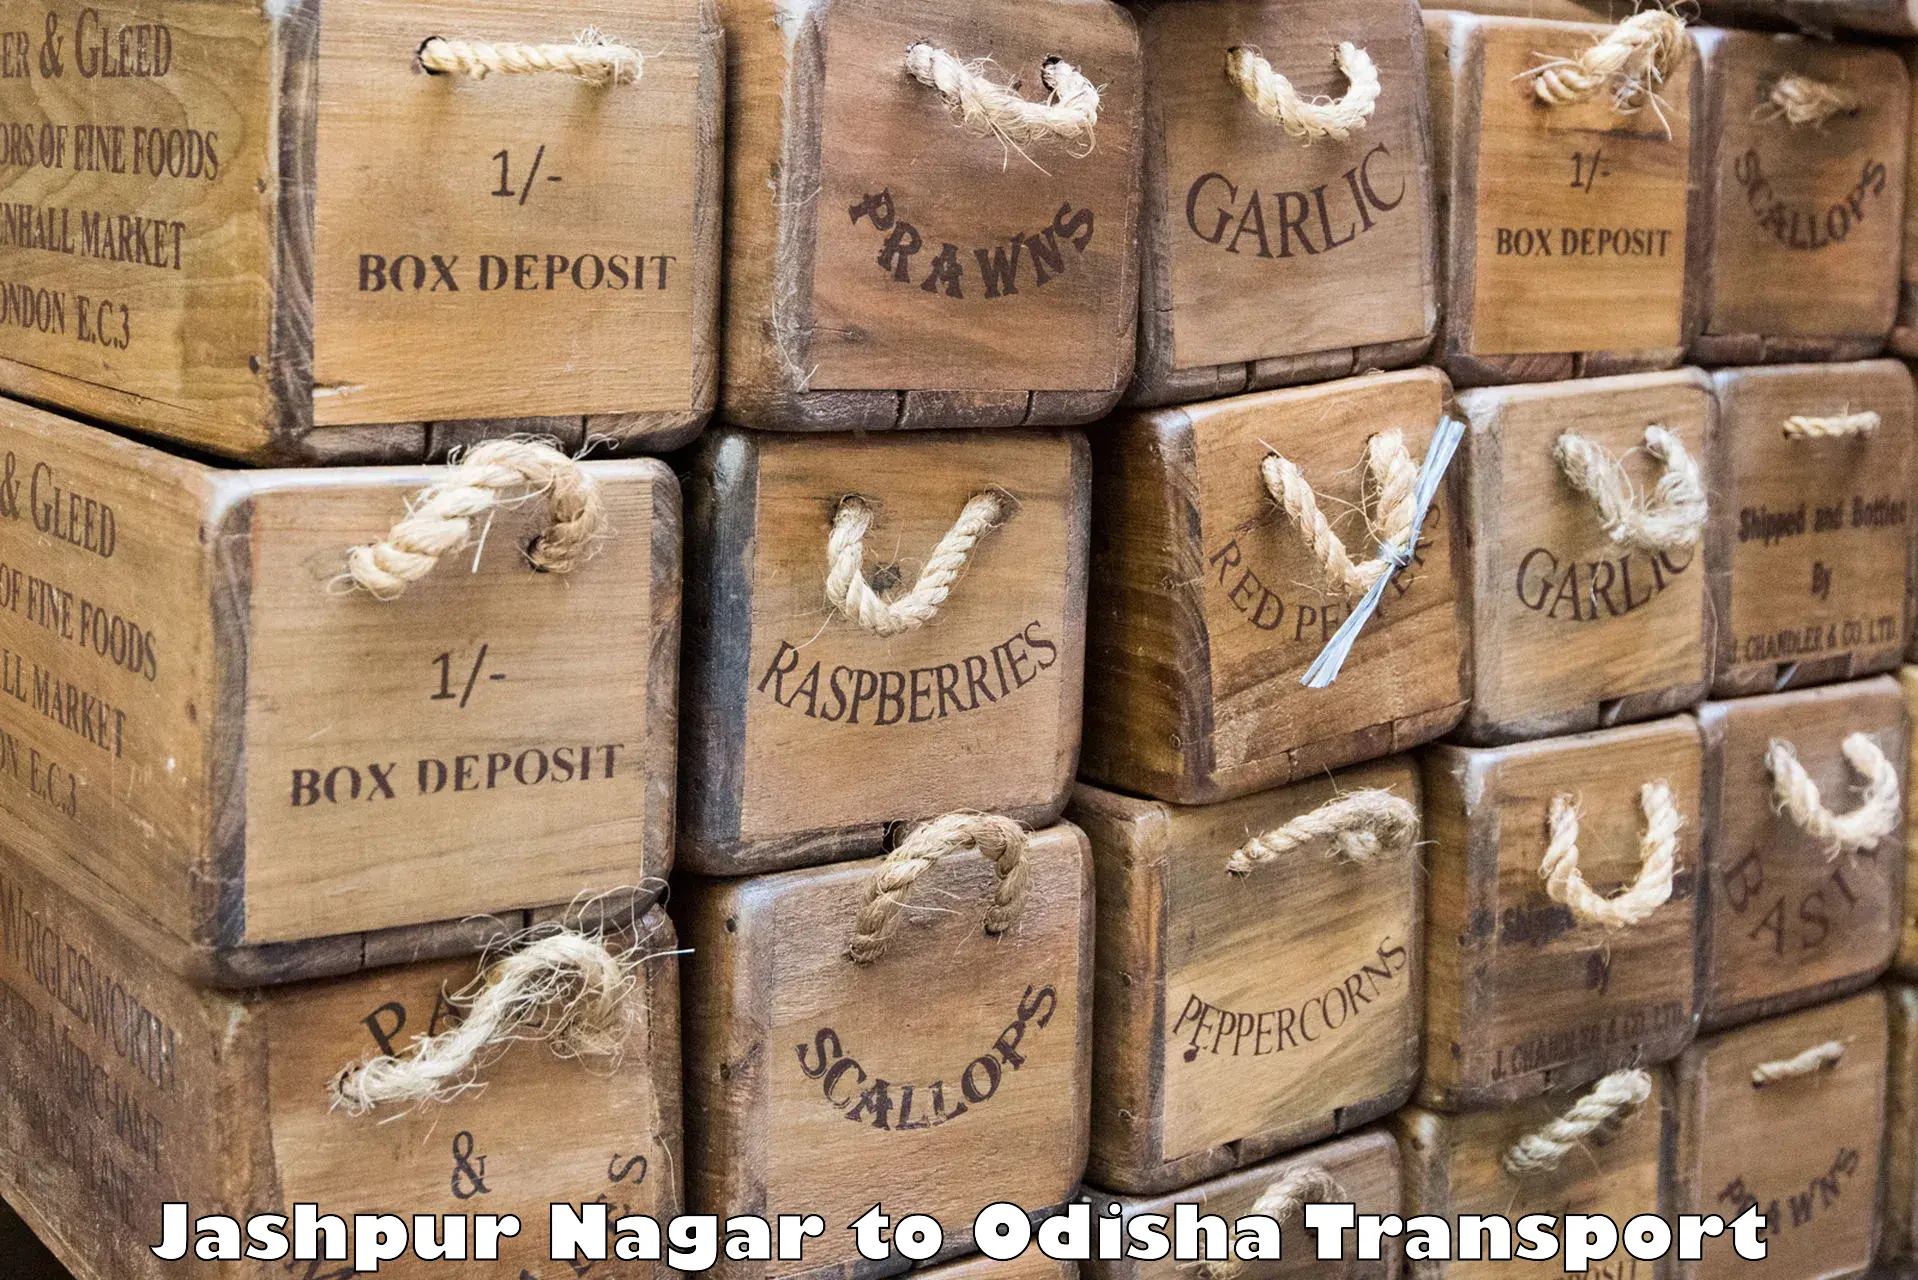 Nearest transport service Jashpur Nagar to Baliapal